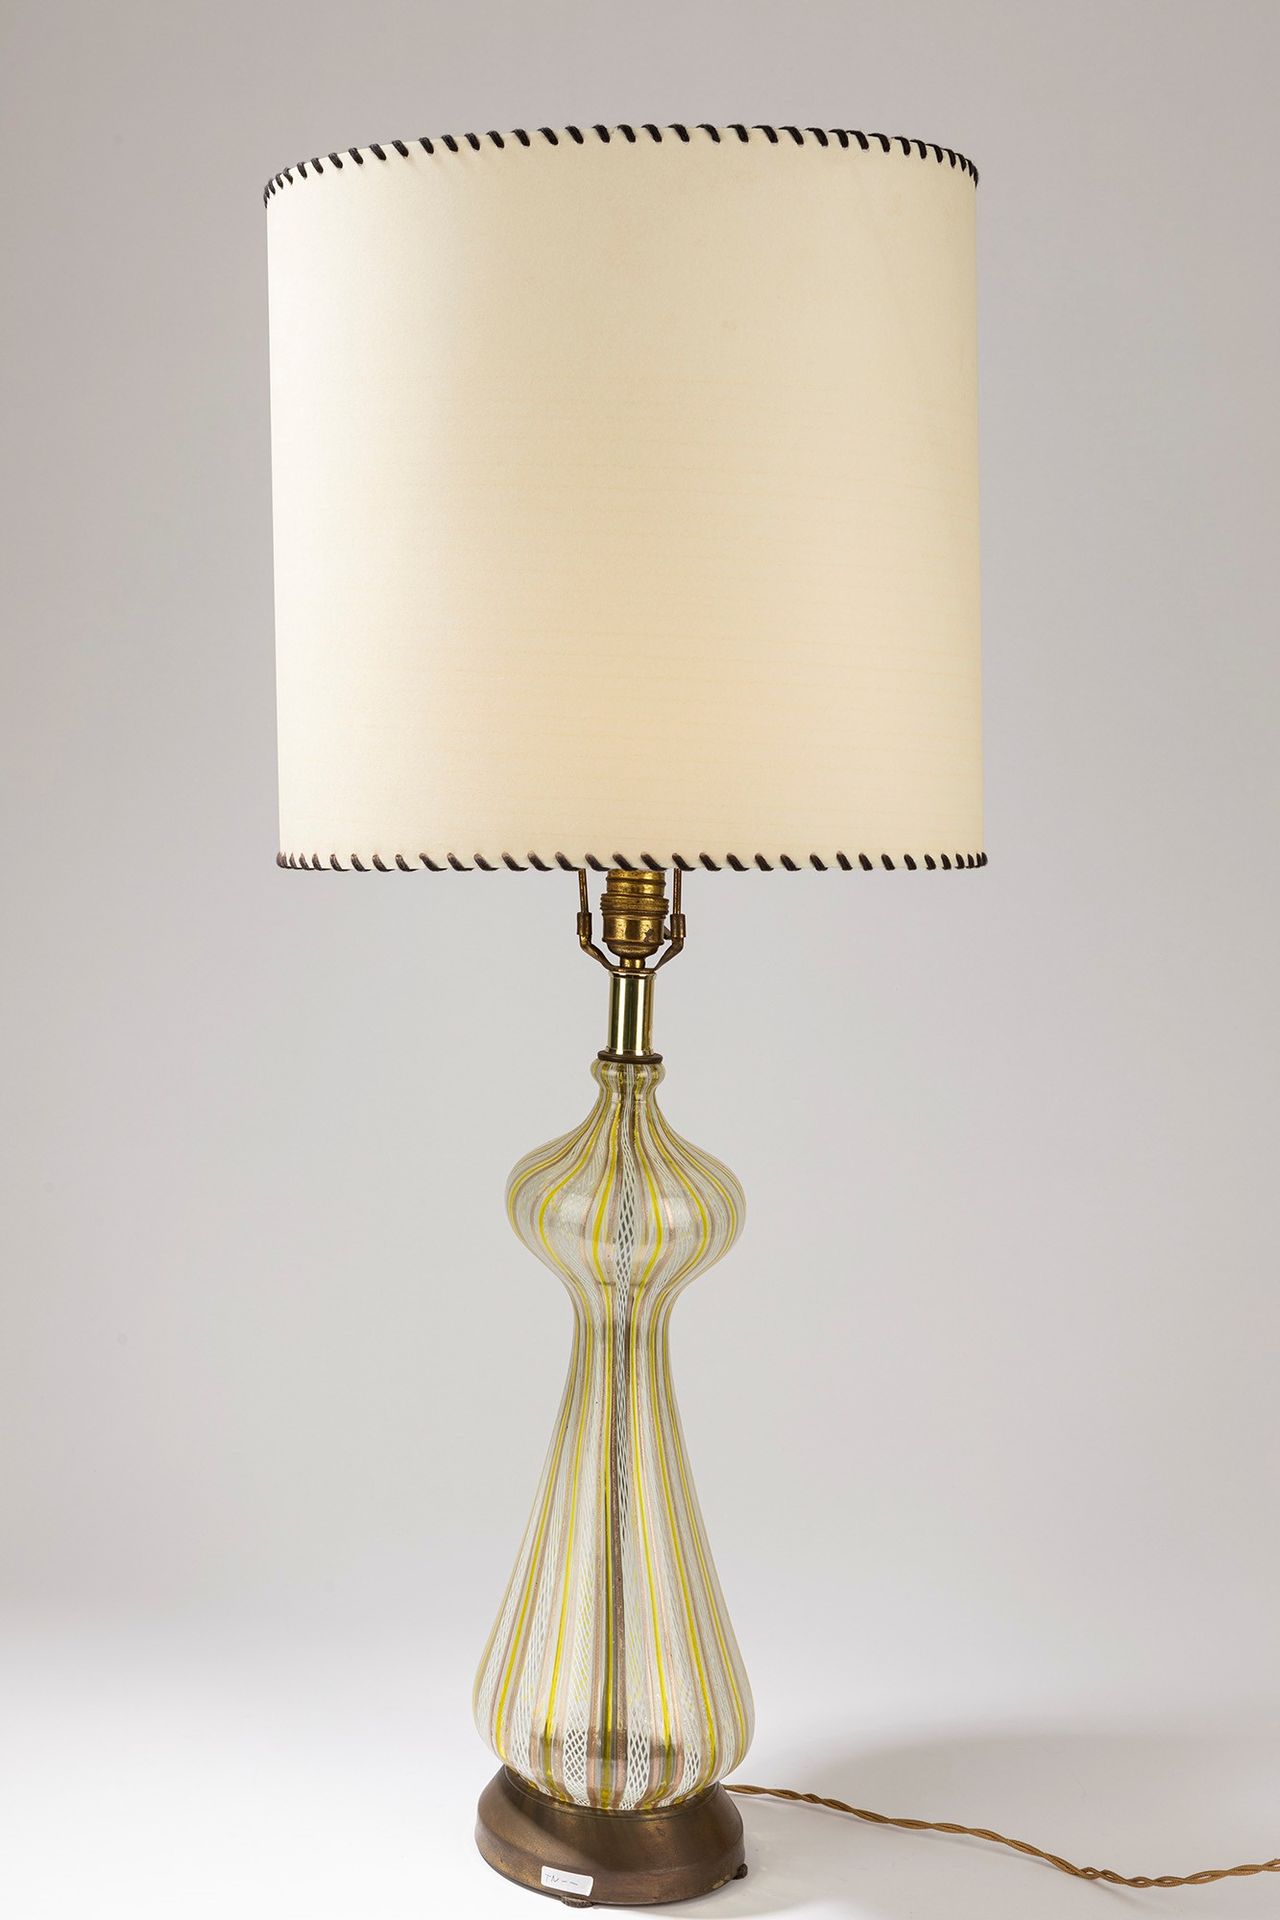 SEGUSO Lampe de table, période 30's

dm 15 cm, H 82 cm
verre soufflé.